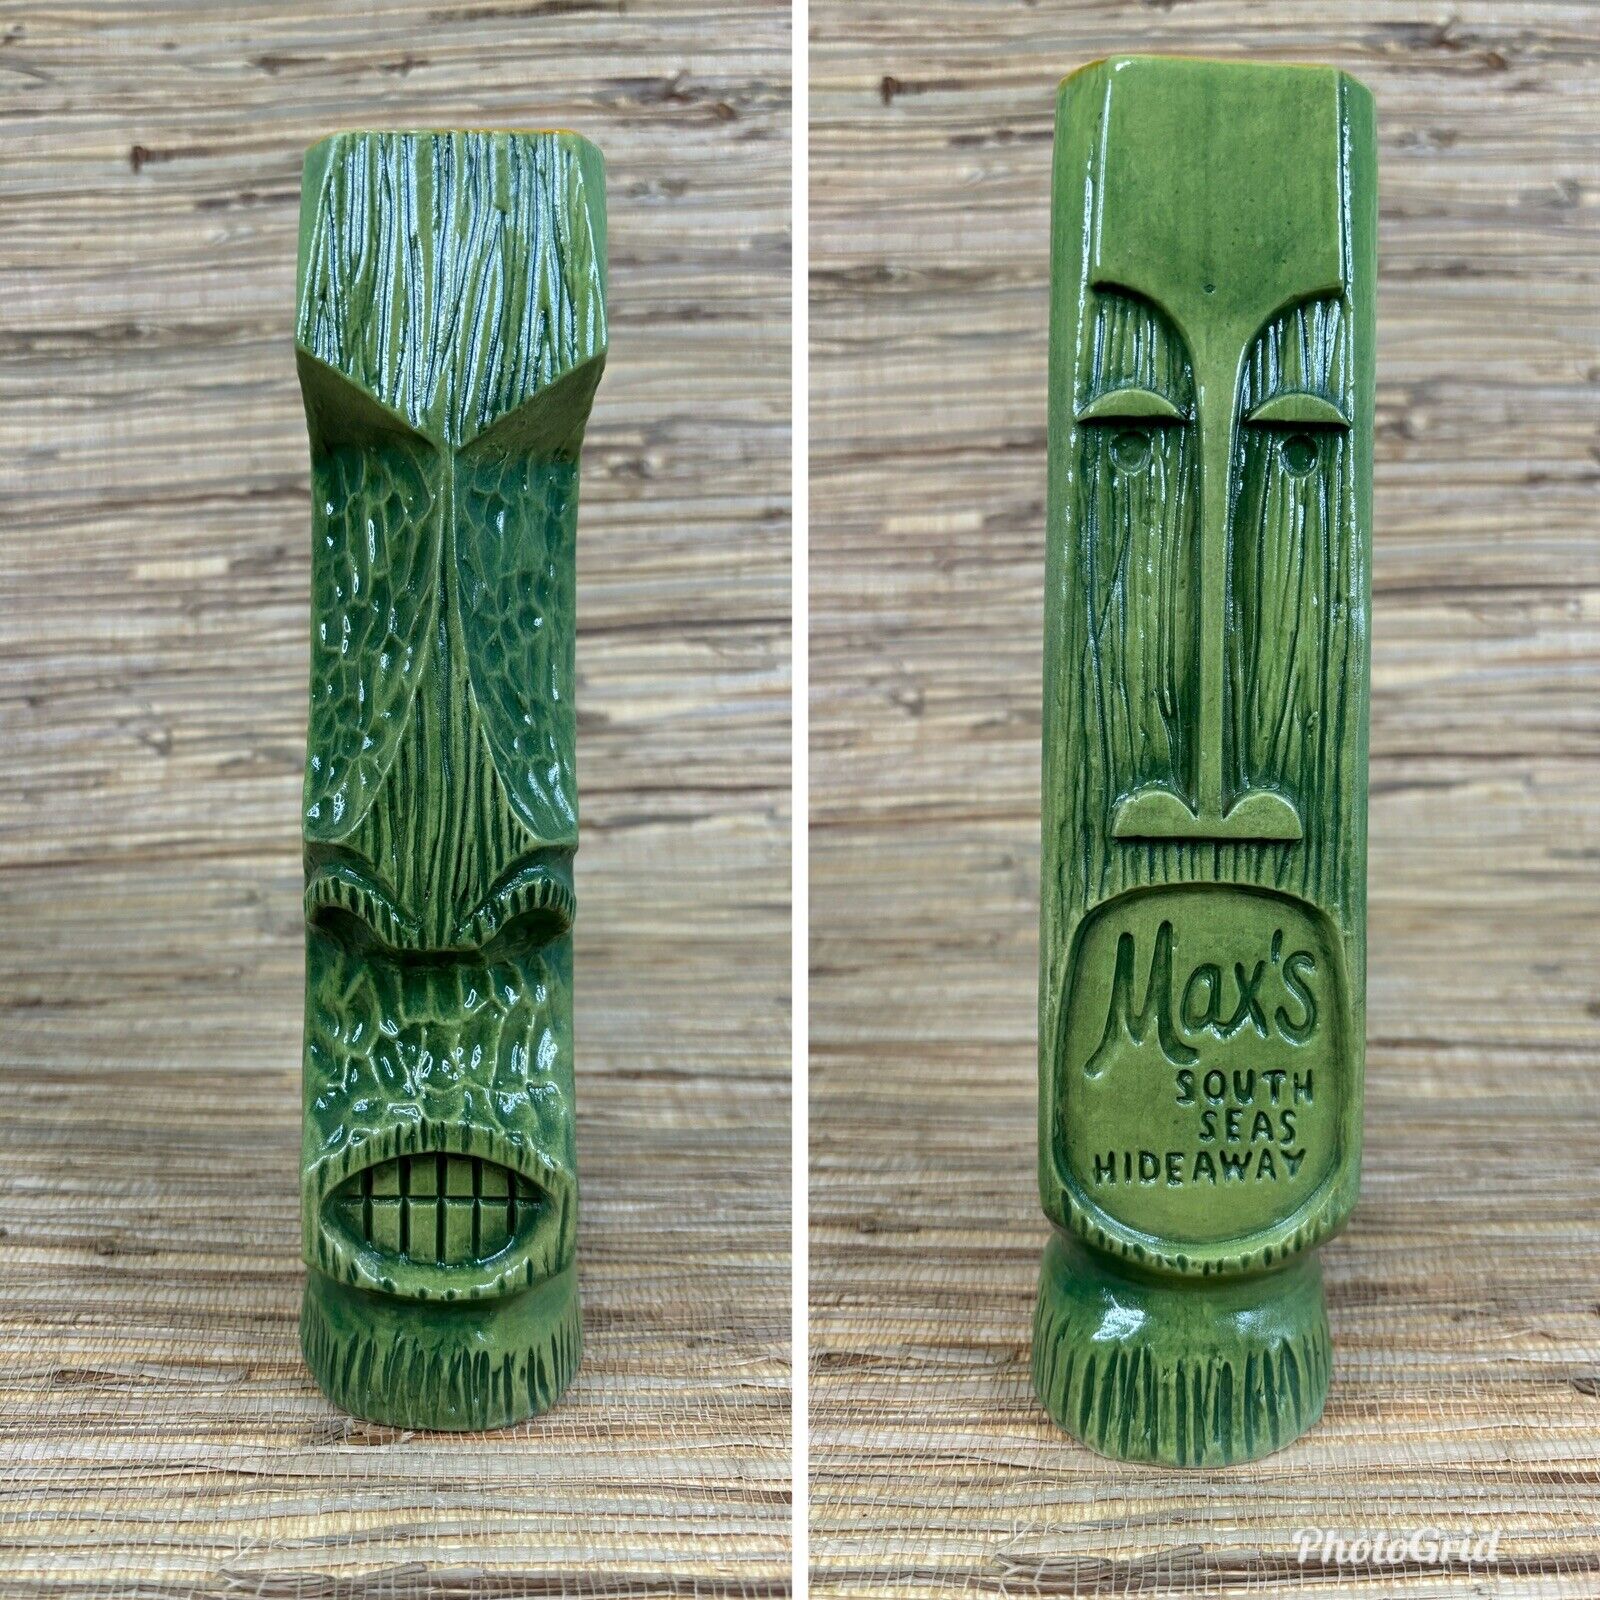 Max's South Seas Hideaway Tiki Mug by Shag Pau Meli 62/200 Green Josh Agle